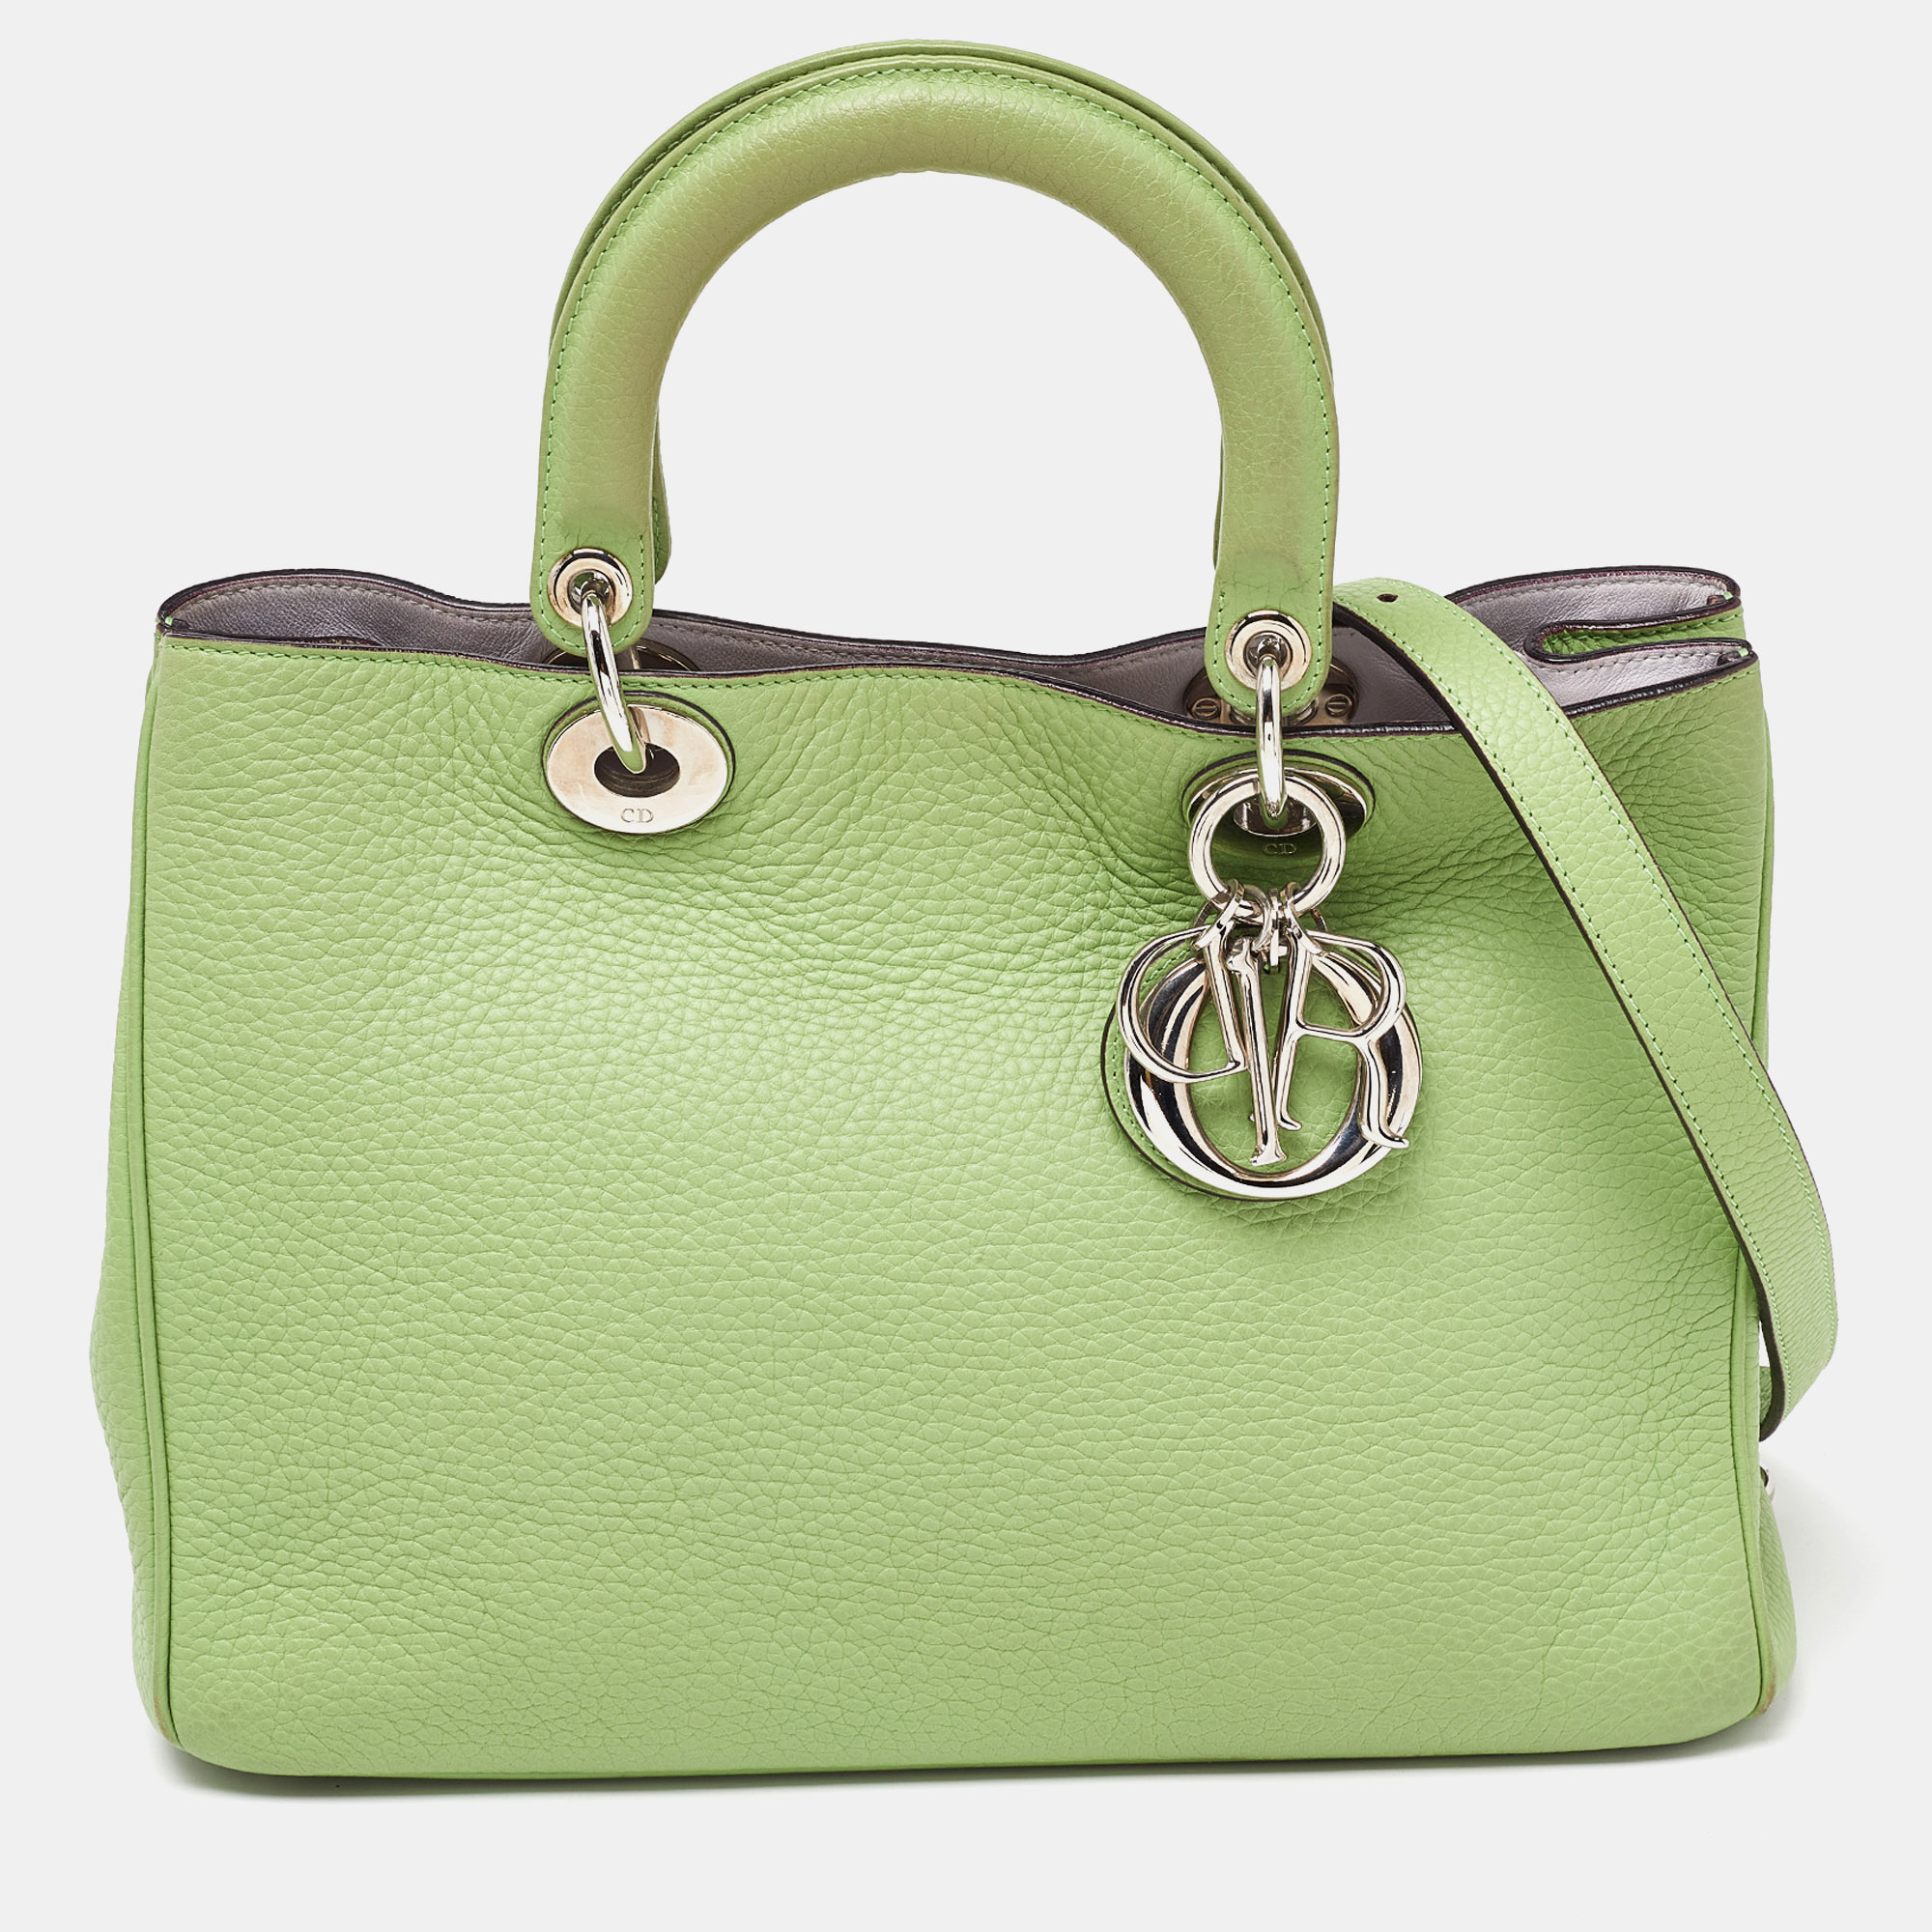 Dior green leather medium diorissimo shopper tote